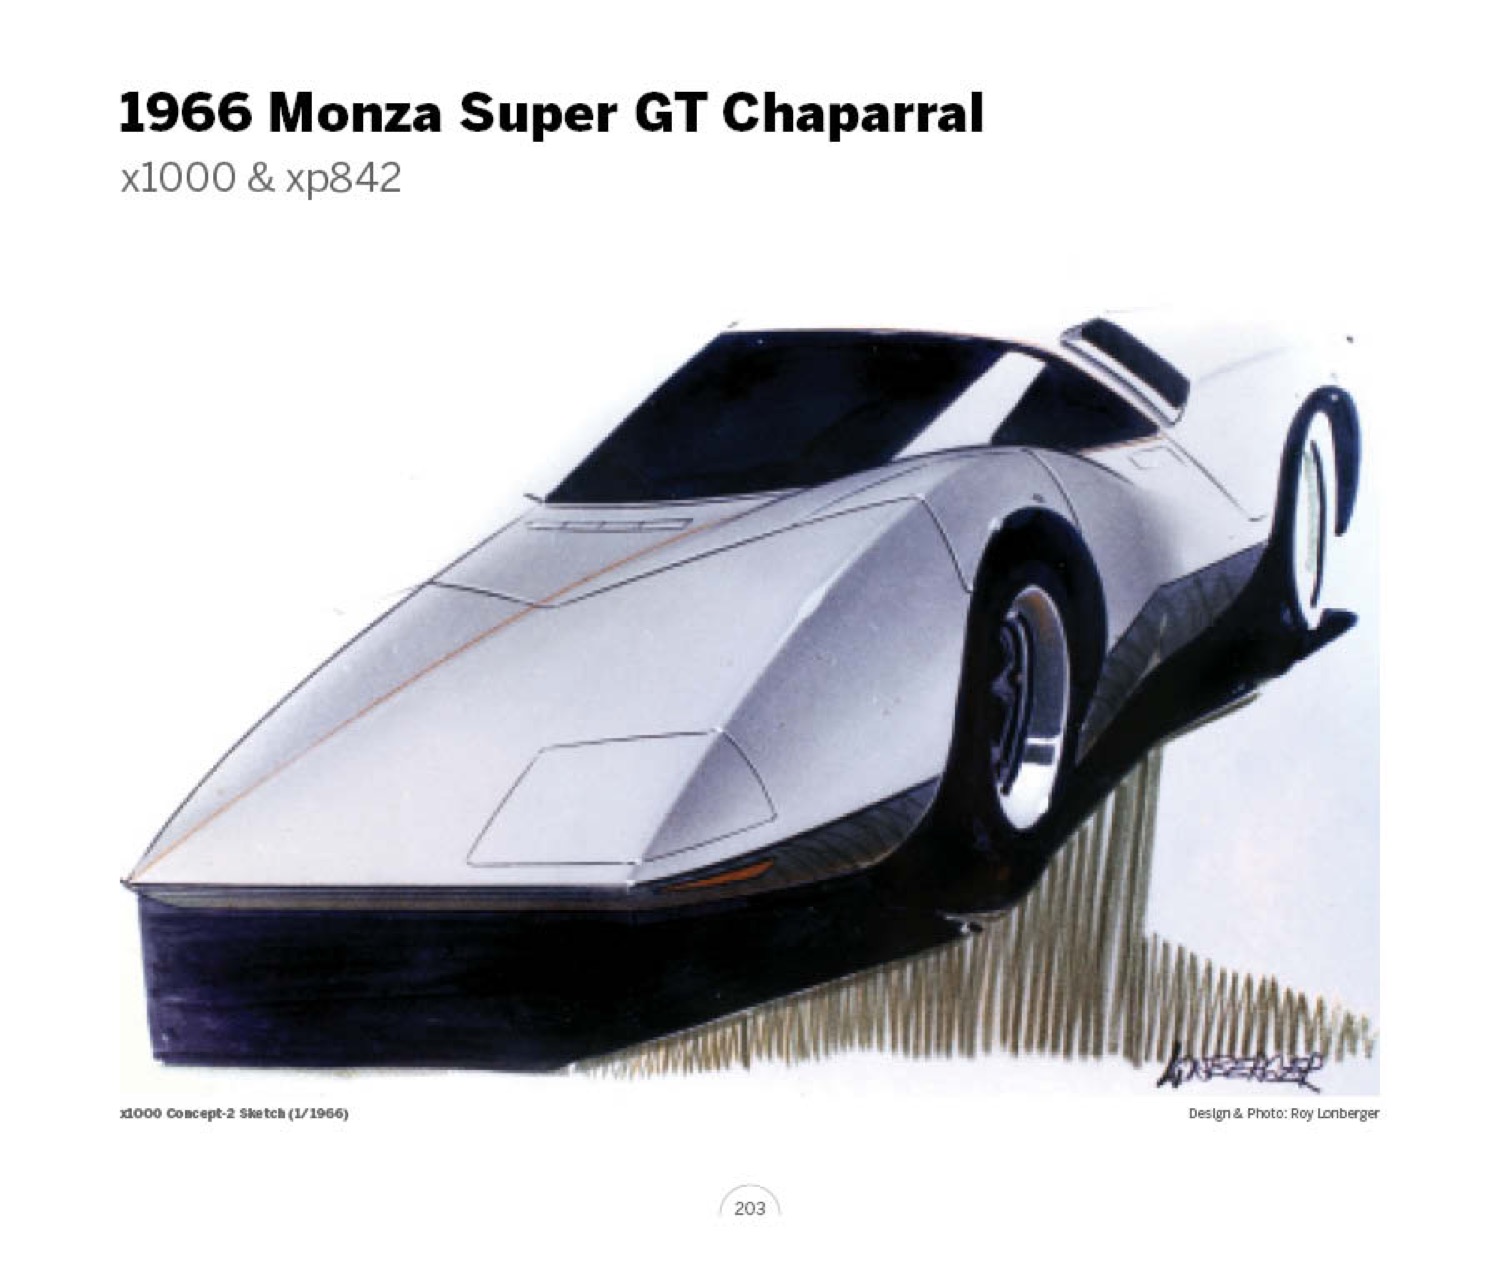 (30) 1966 Monza Super GT Chaparral x1000 LoRez.jpg